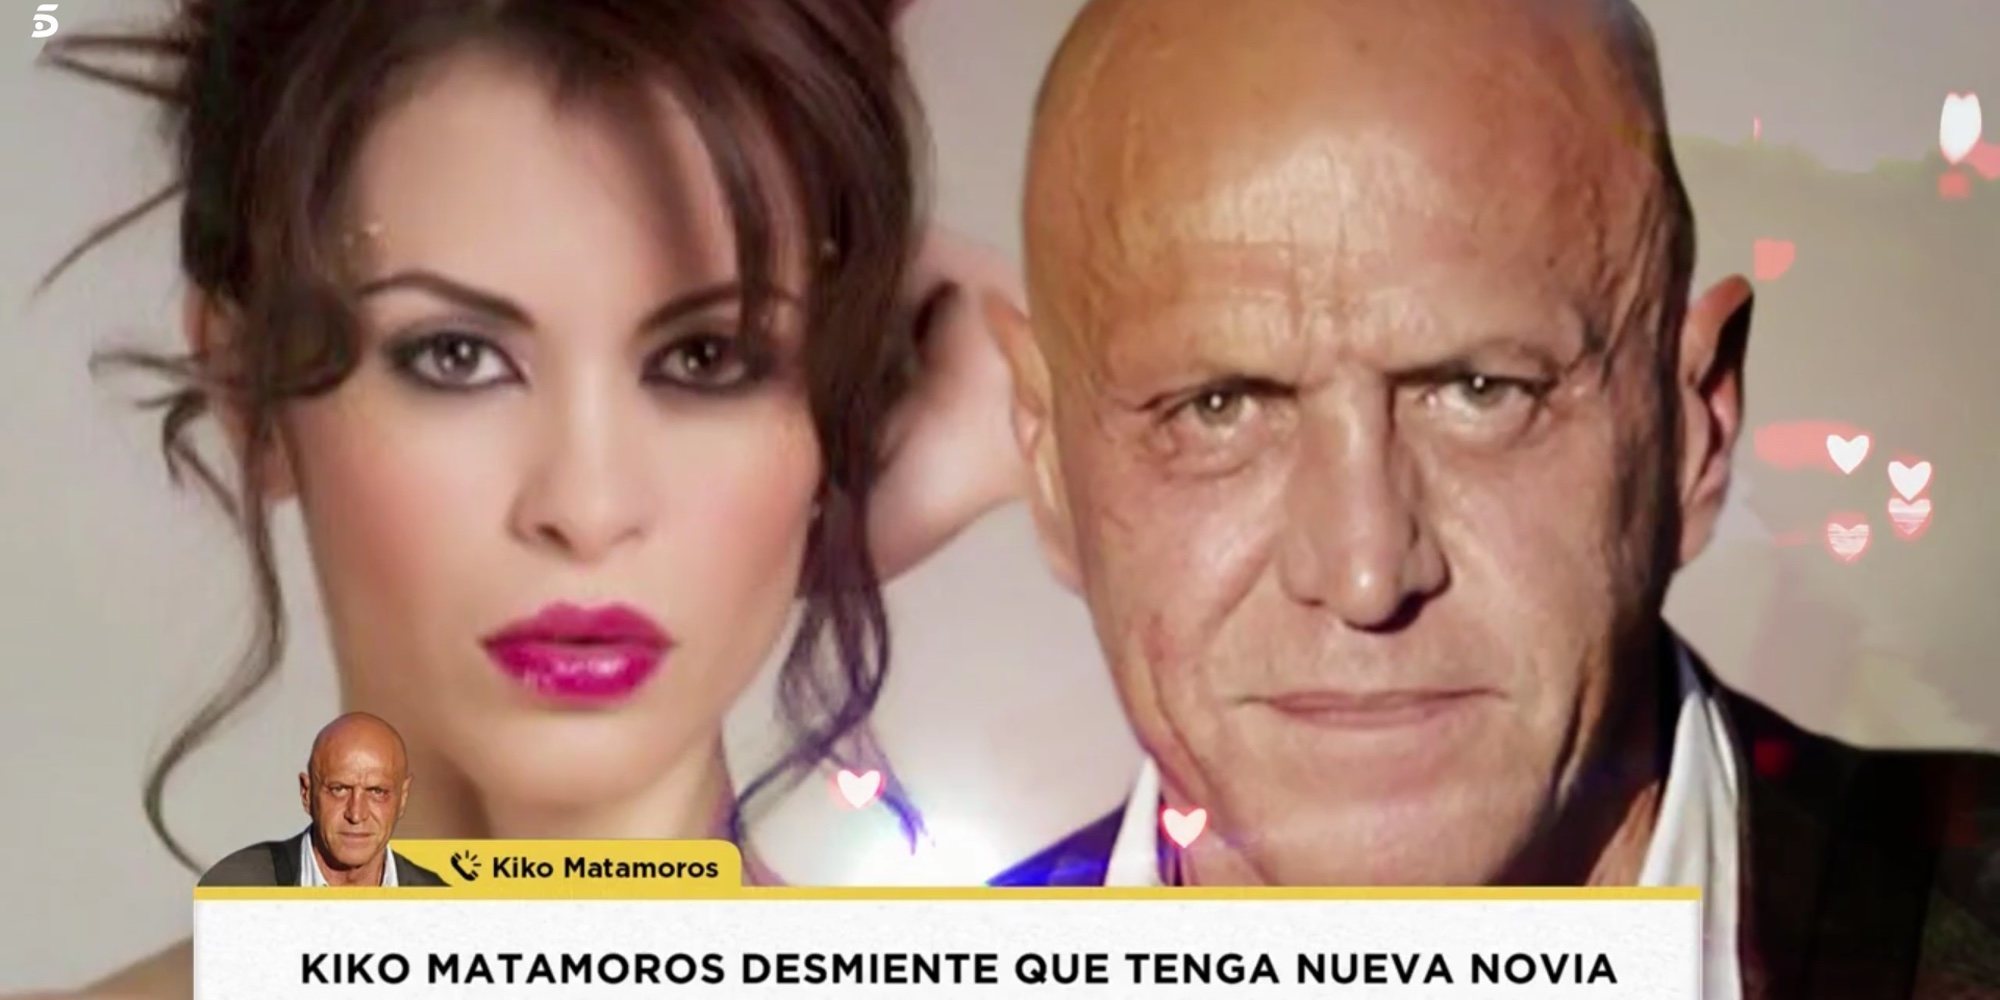 Kiko Matamoros desmiente la supuesta relación con la modelo Nancy Sneide: "He hablado con ella una sola noche"